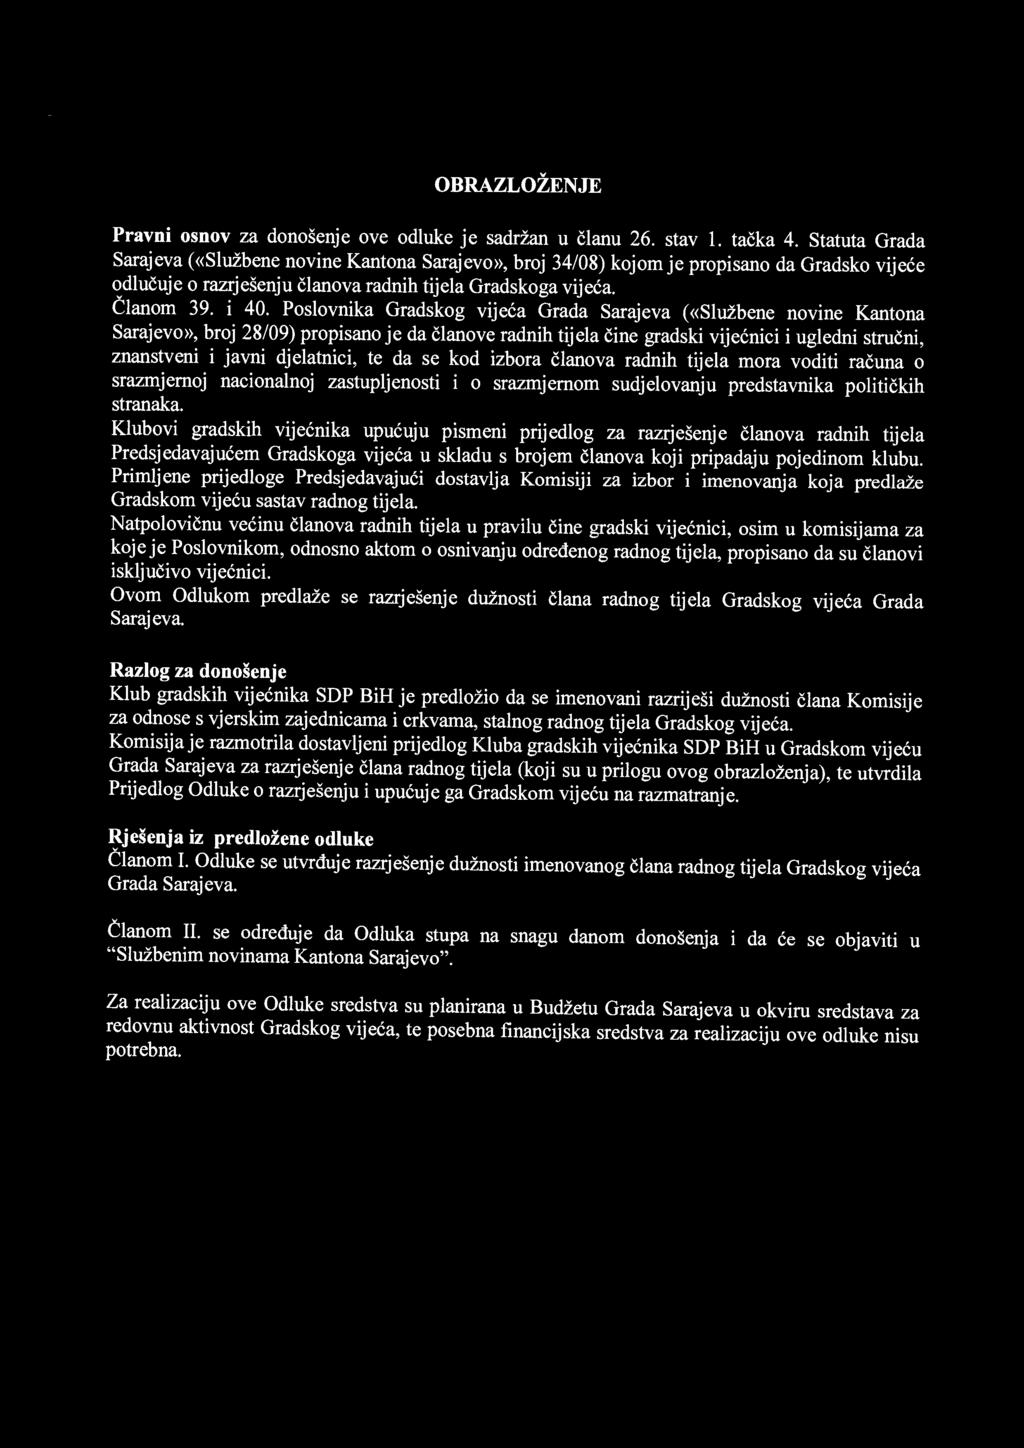 Poslovnika Gradskog vijeća Grada Sarajeva («Službene novine Kantona Sarajevo», broj 28/09) propisano je da članove radnih tijela čine gradski vije ćnici i ugledni stru čni, znanstveni i javni